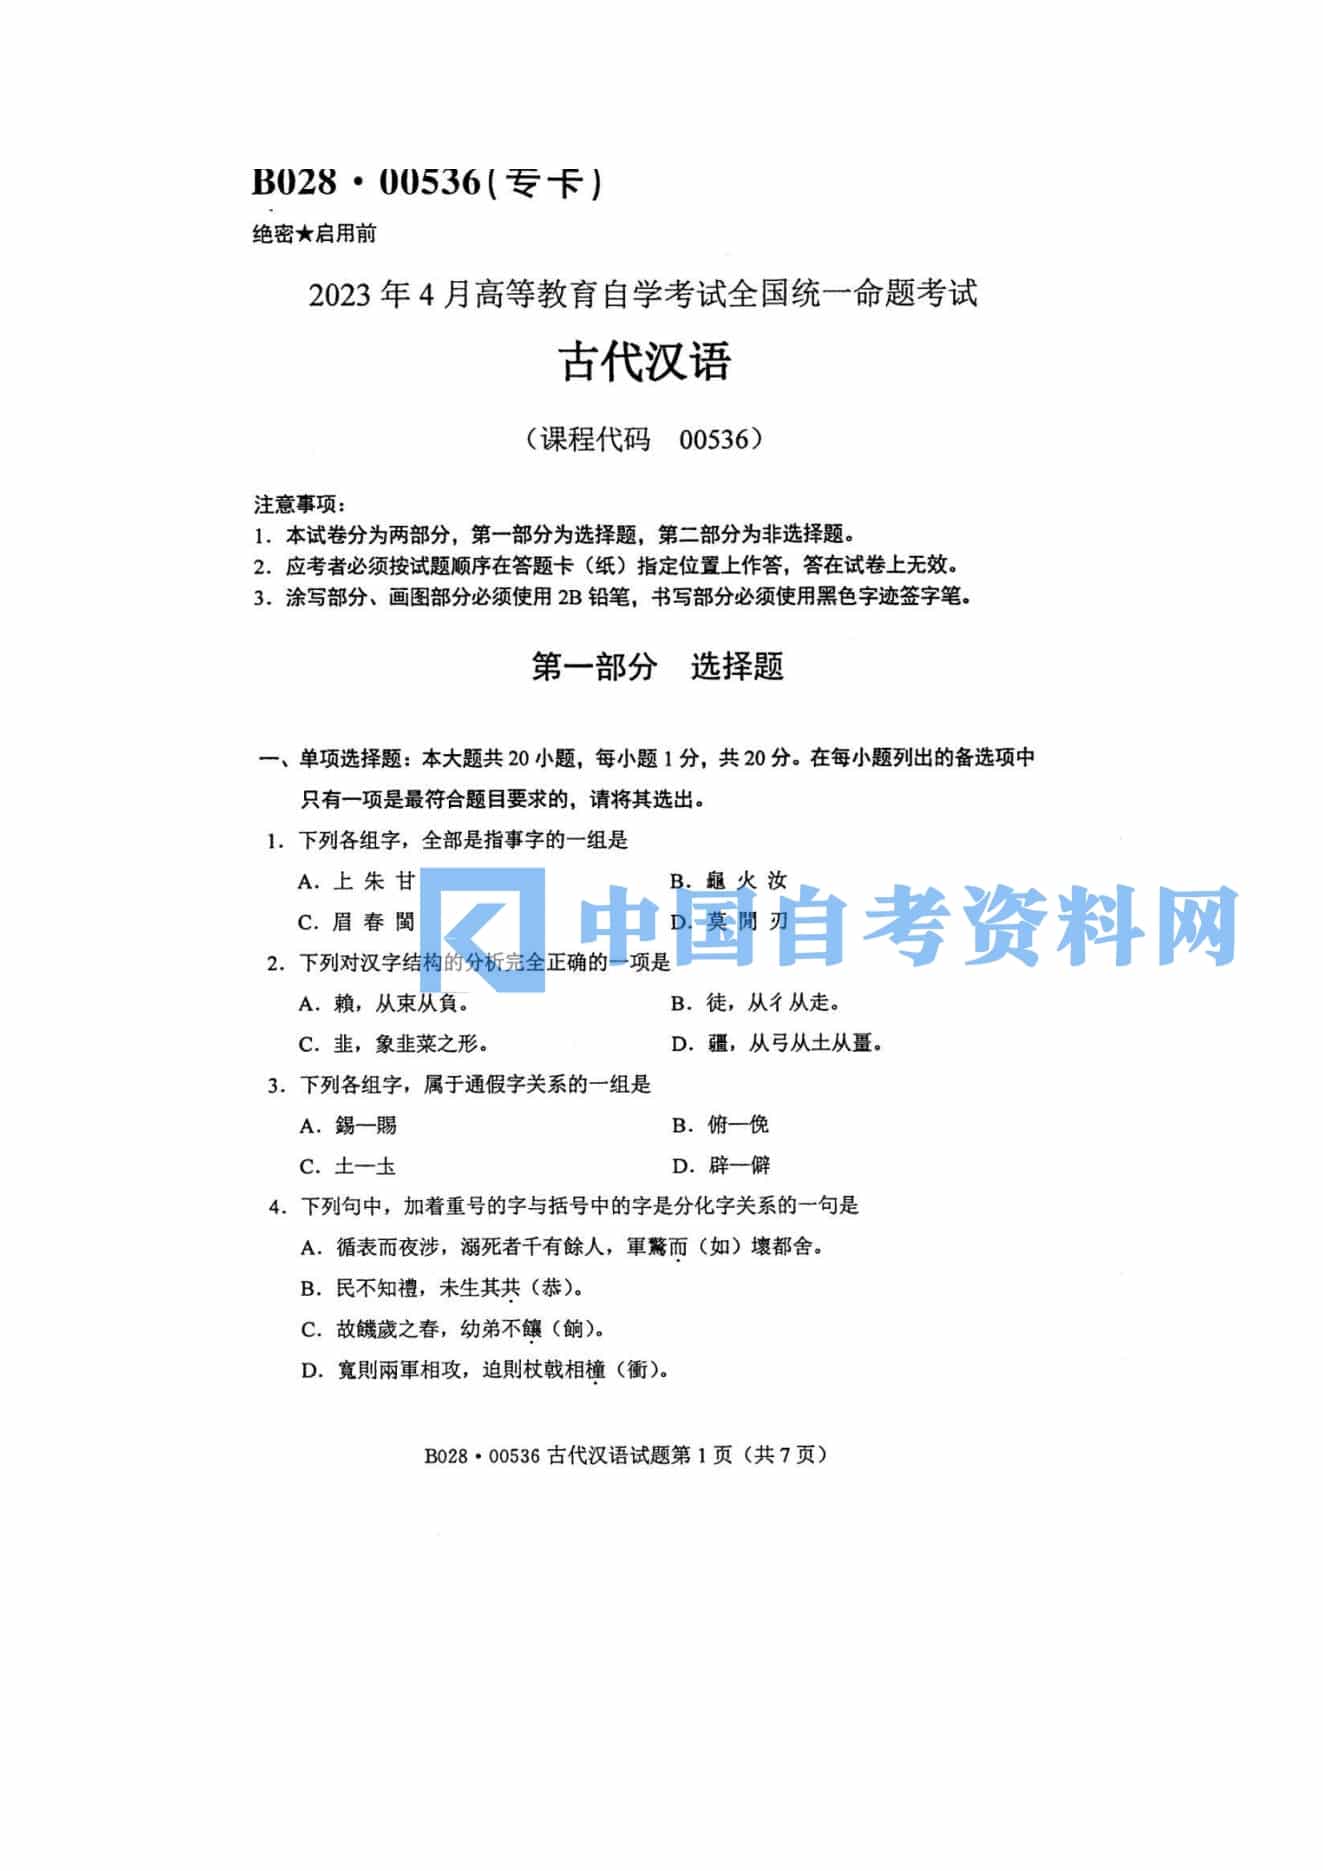 高等教育自学考试00536古代汉语历年真题及答案插图